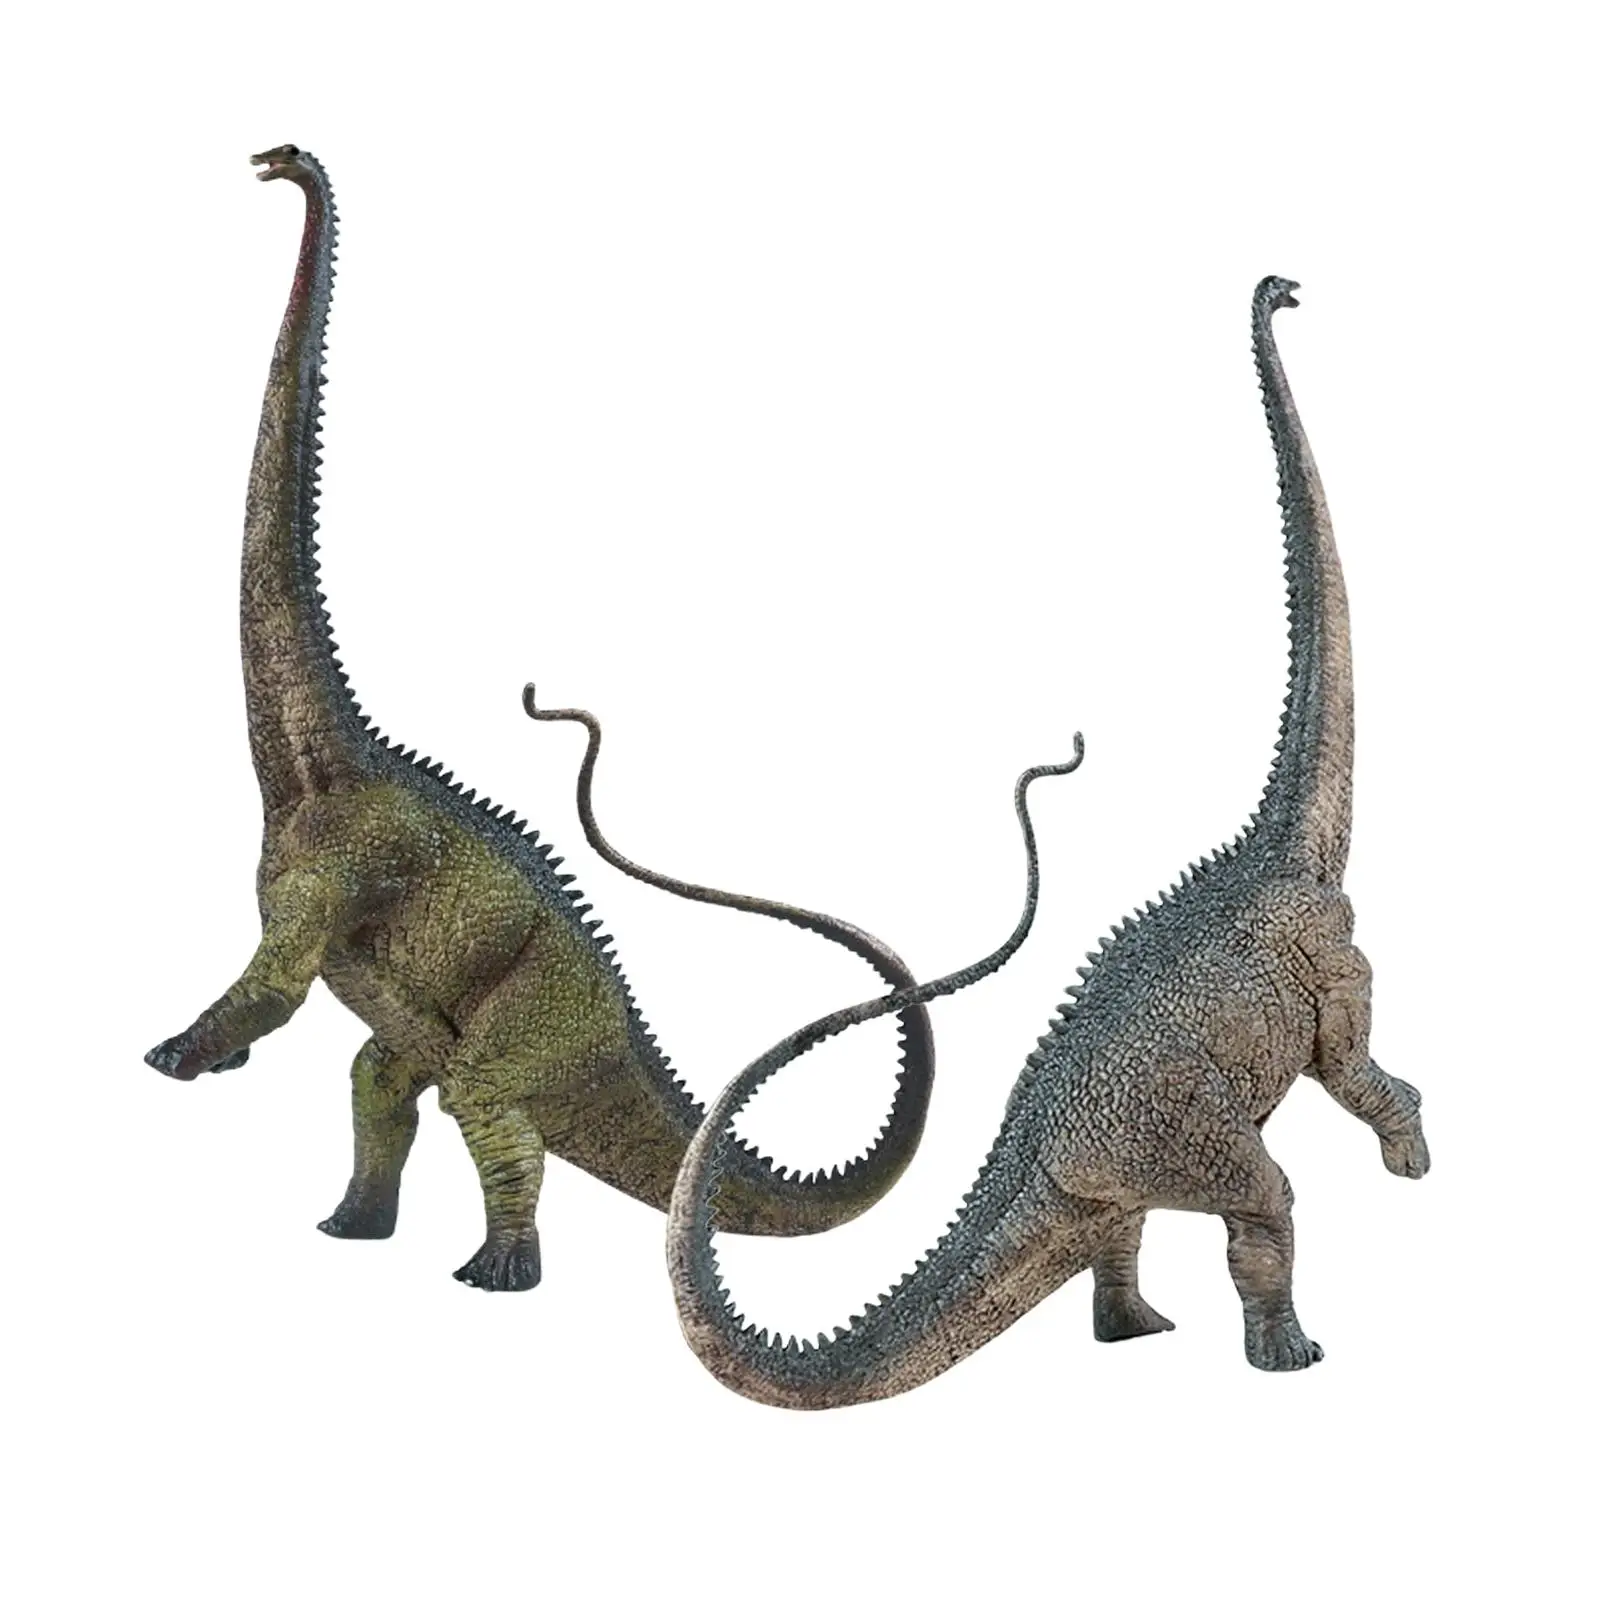  2pcs Realistic Dinosaur Figures Toy Action Figure for Shelf Decor 